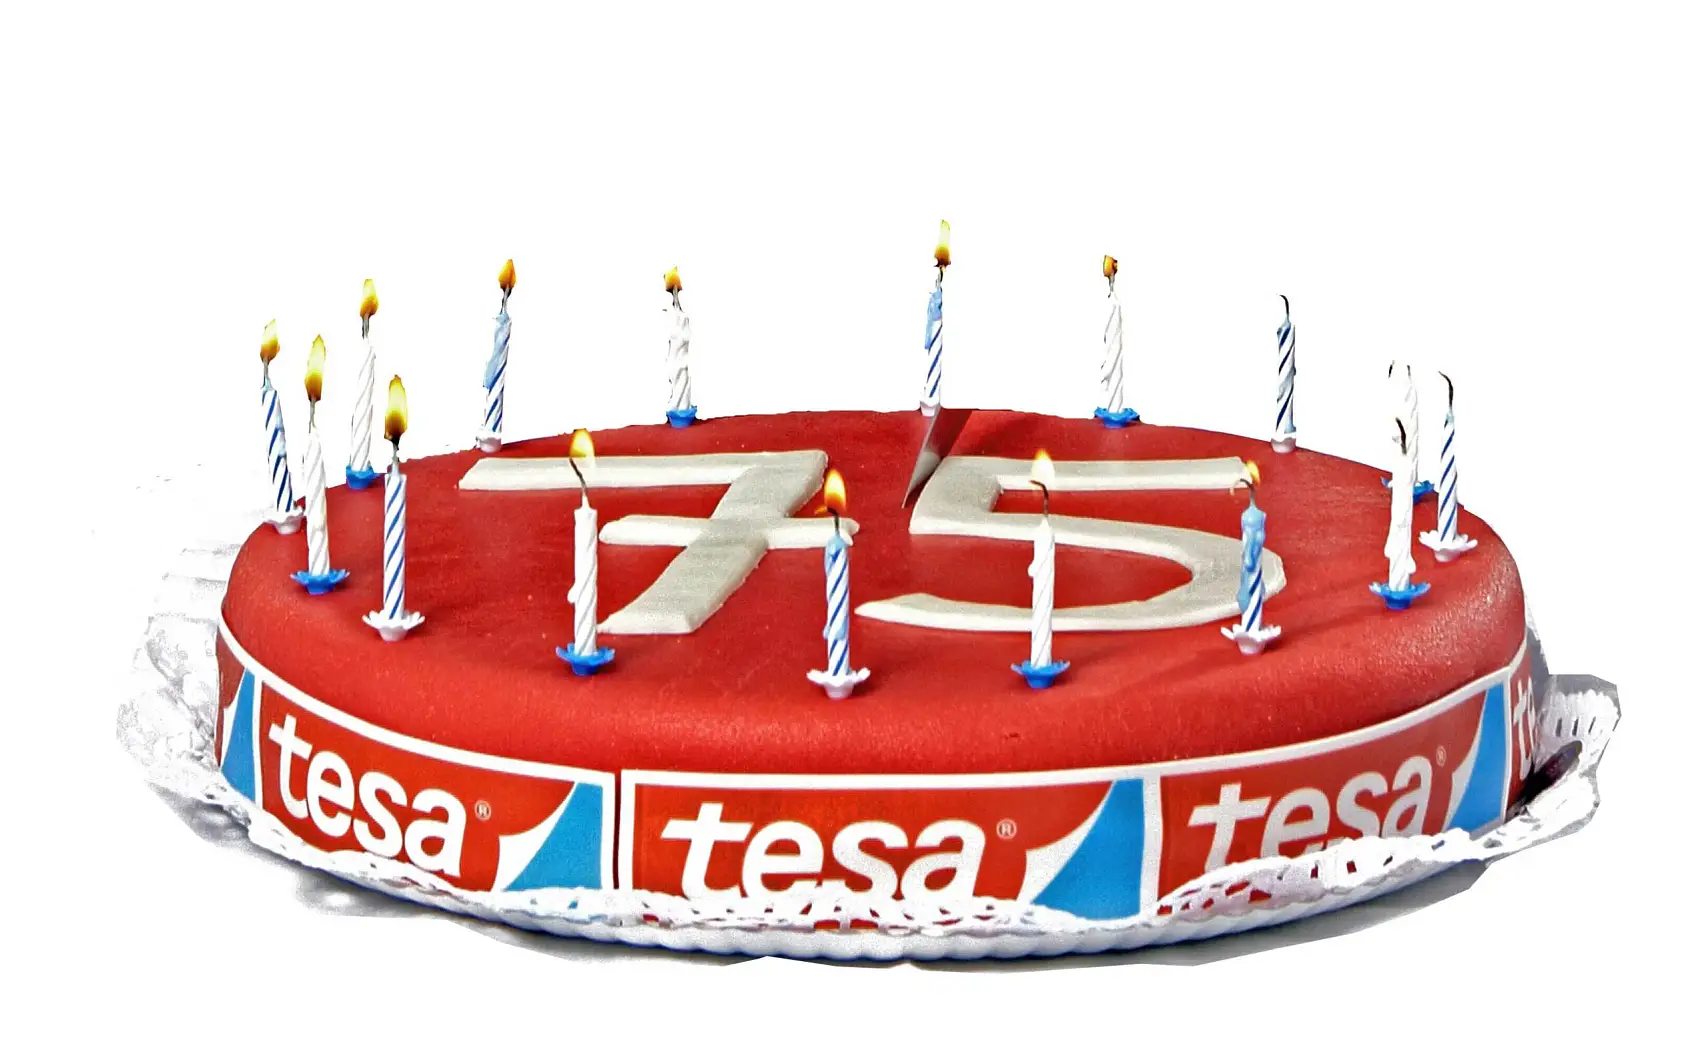 Το 2011 η tesa γιόρτασε τα 75α της γενέθλια